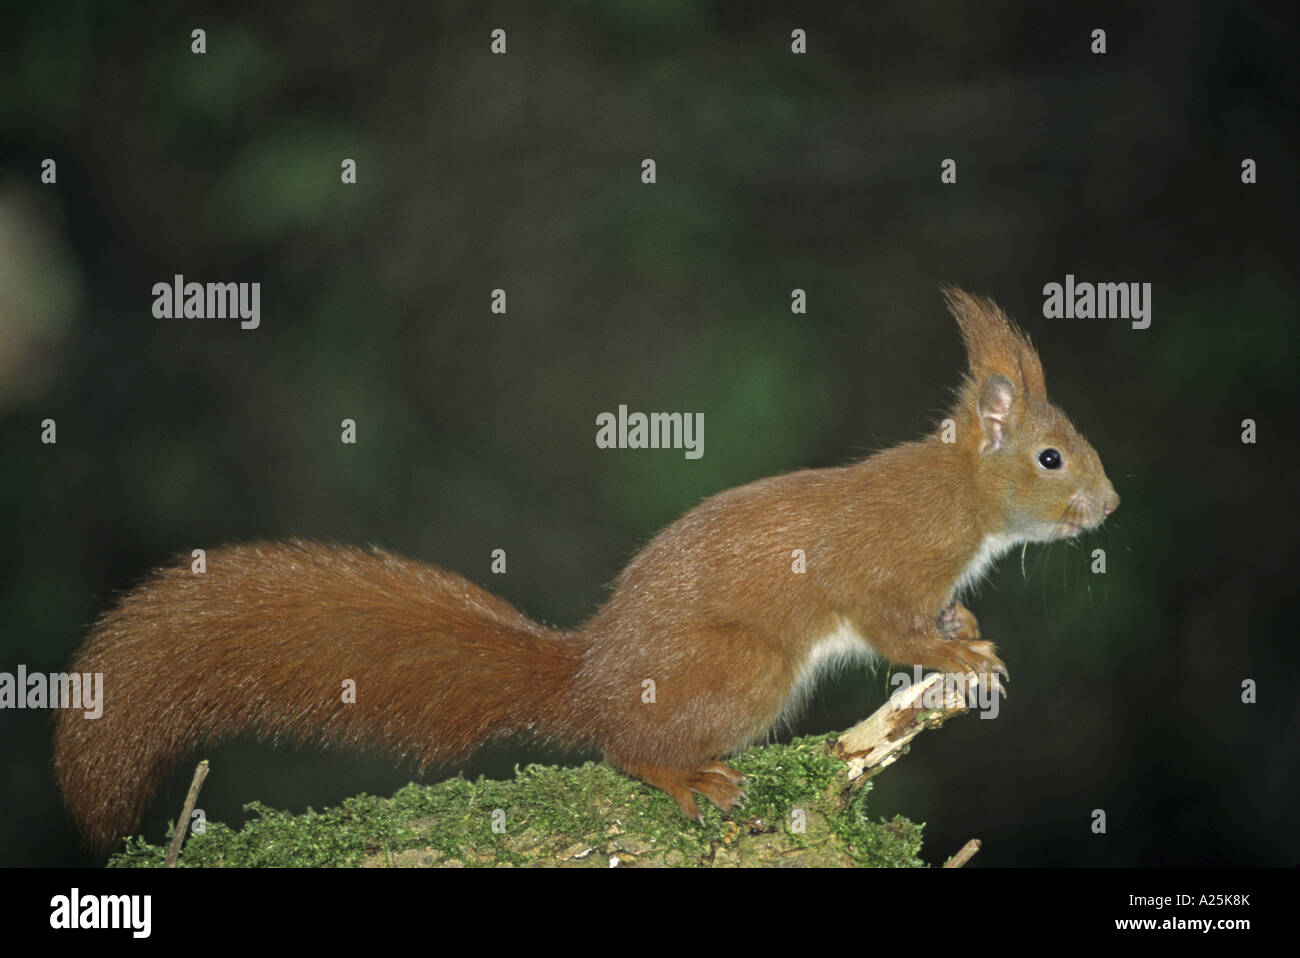 European red squirrel, Eurasian red squirrel (Sciurus vulgaris) Stock Photo